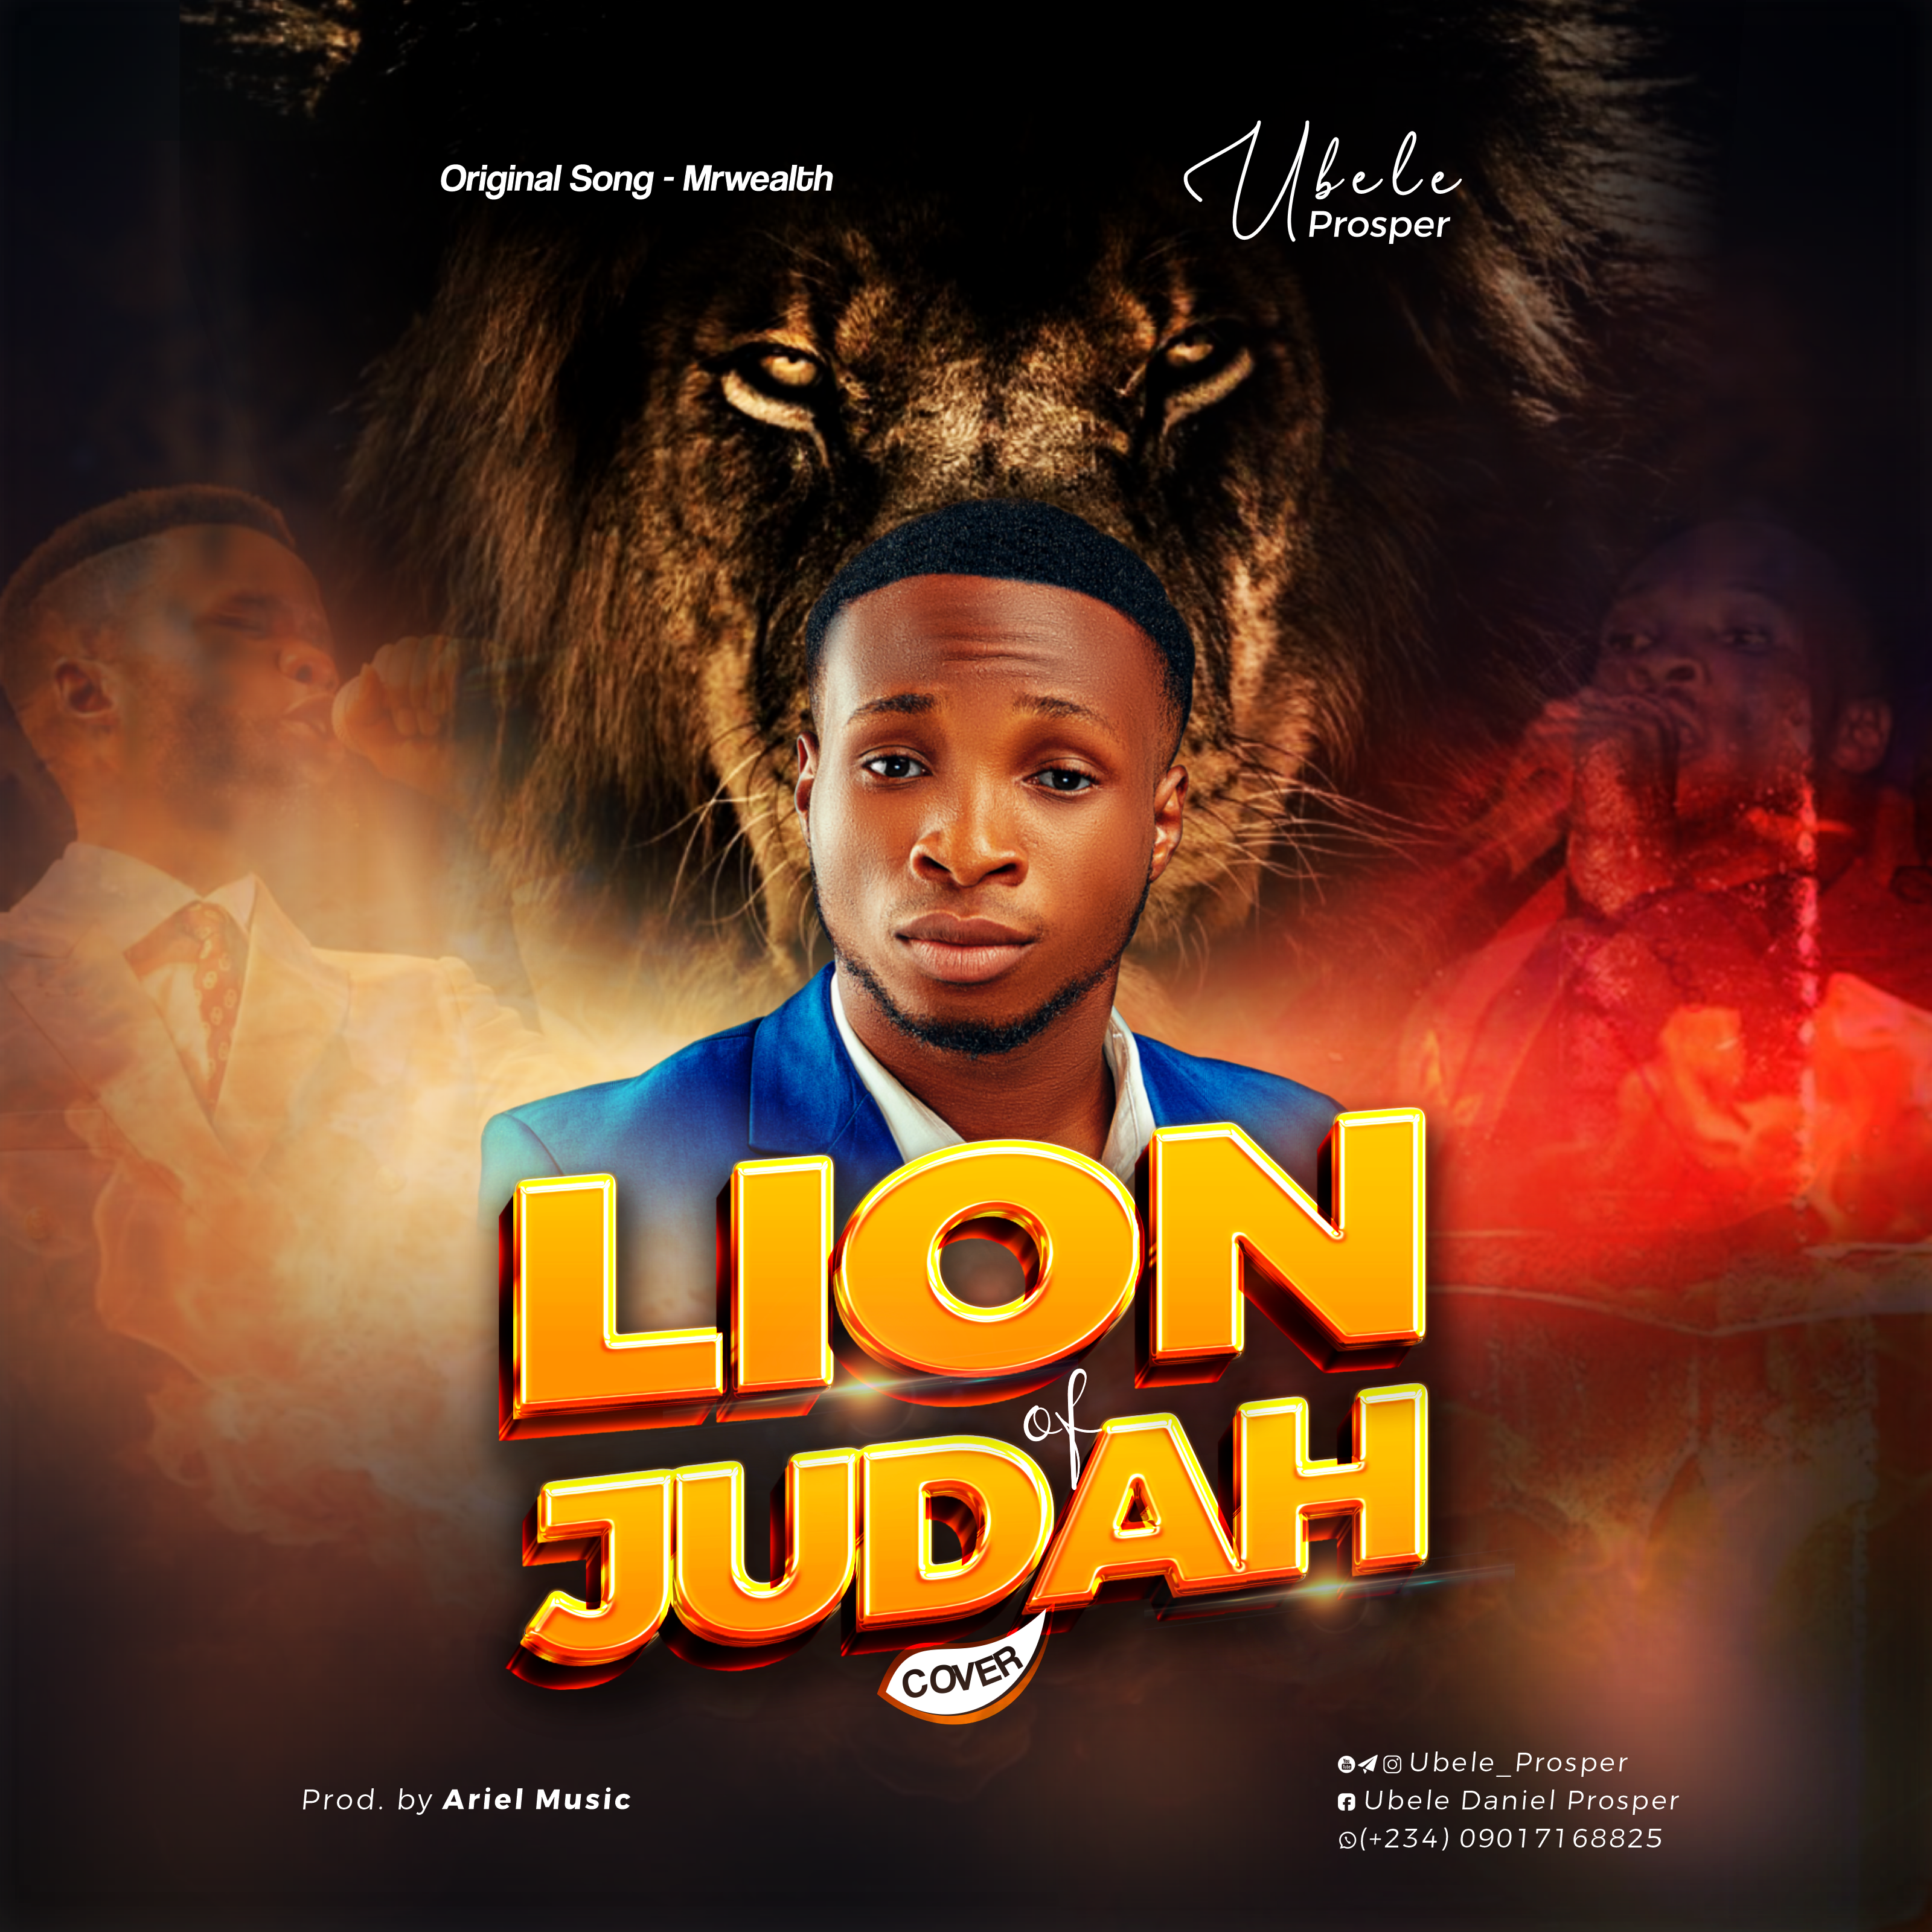 Lion of Judah cover by Ubele Prosper